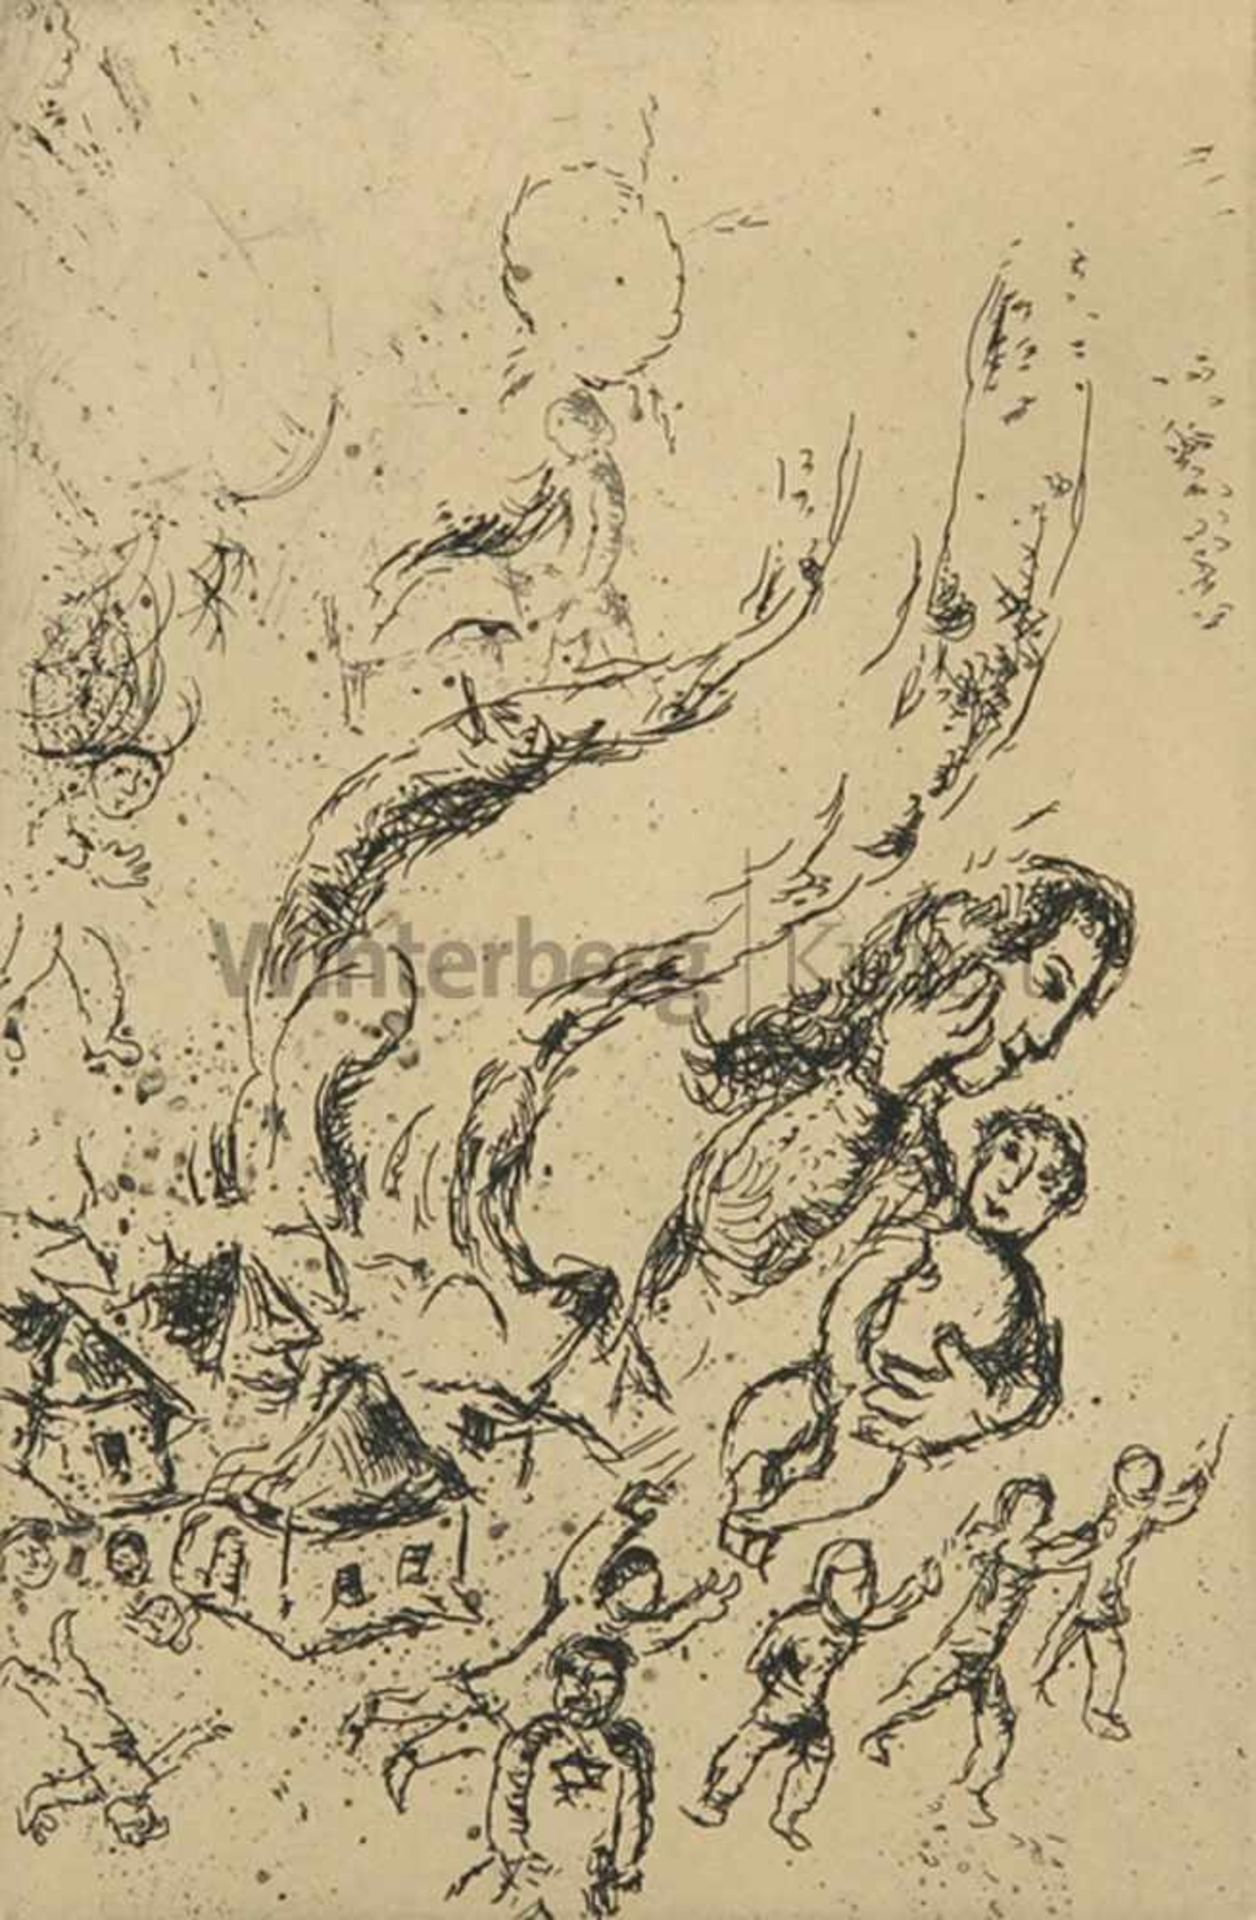 MARC CHAGALL Witebsk 1887 - 1985 VenceLettre à Marc Chagall, Planche IV. Radierung mit Plattenton zu